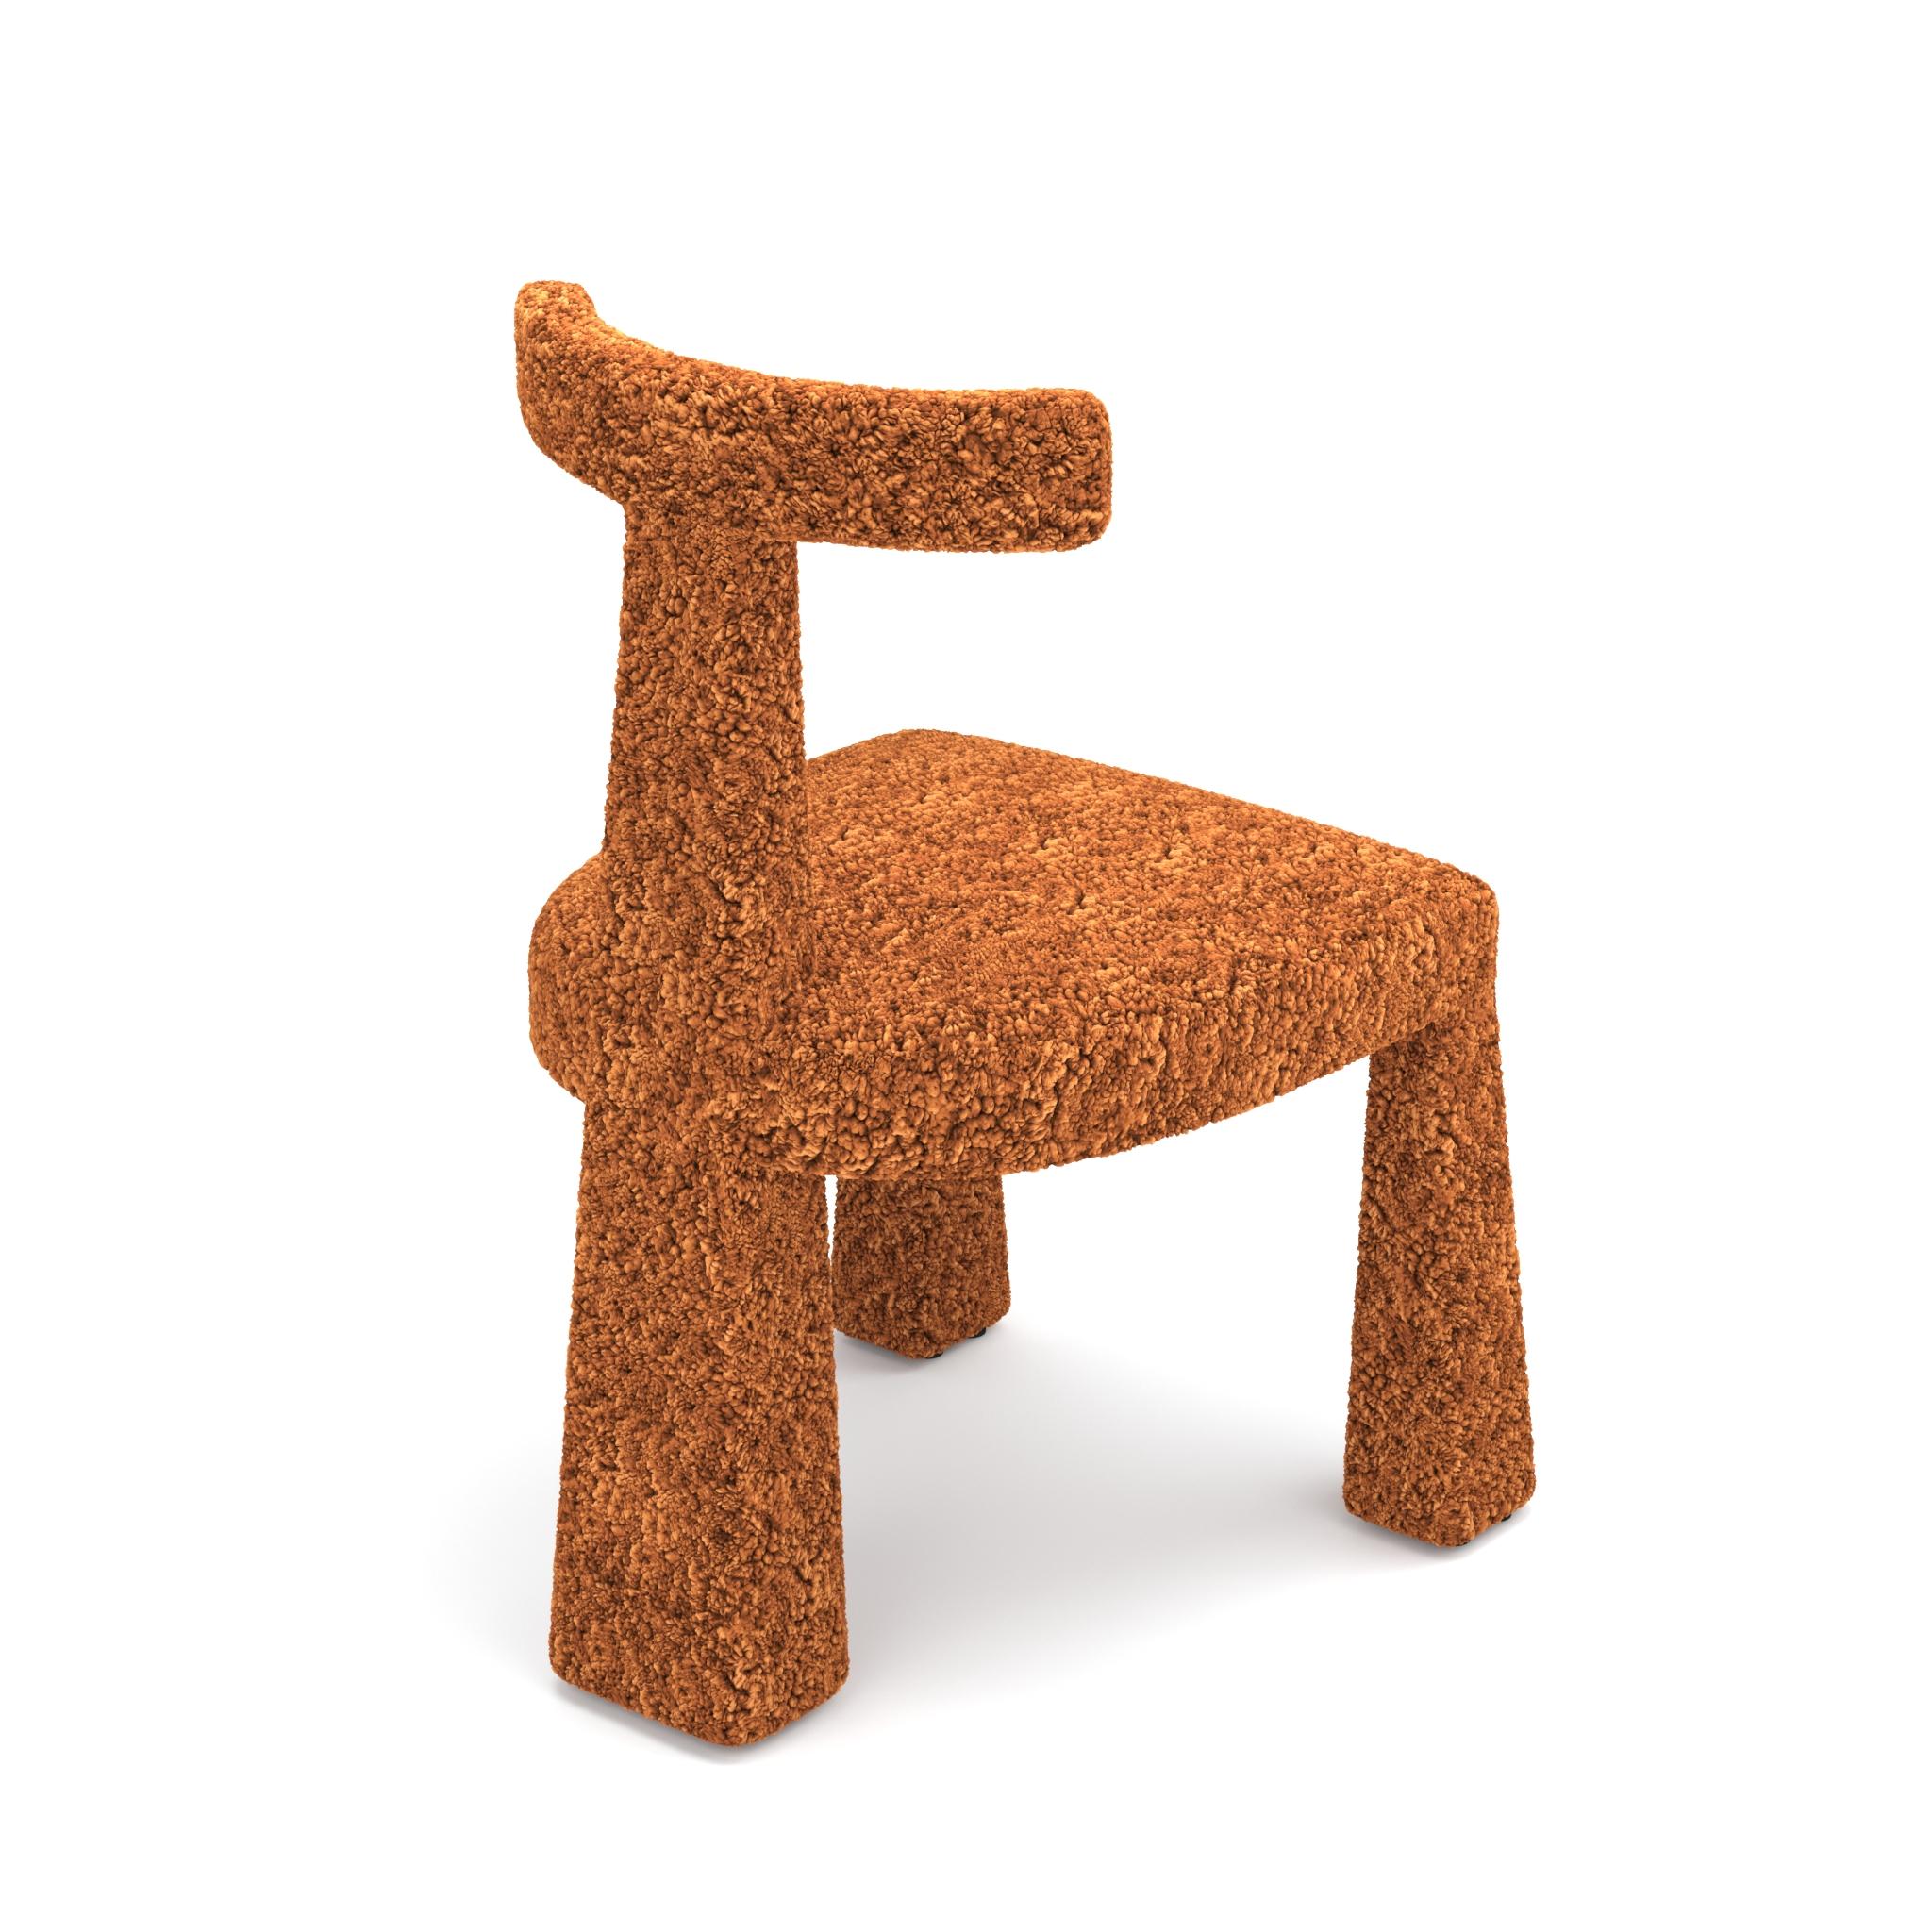 Cadre en bois massif présentant une silhouette élégante et angulaire.
La chaise est très stable et convient aux contrats et à l'hospitalité.
Les patins en plastique protègent les sols durs des rayures.
Matériaux illustrés : Fausse peau de mouton